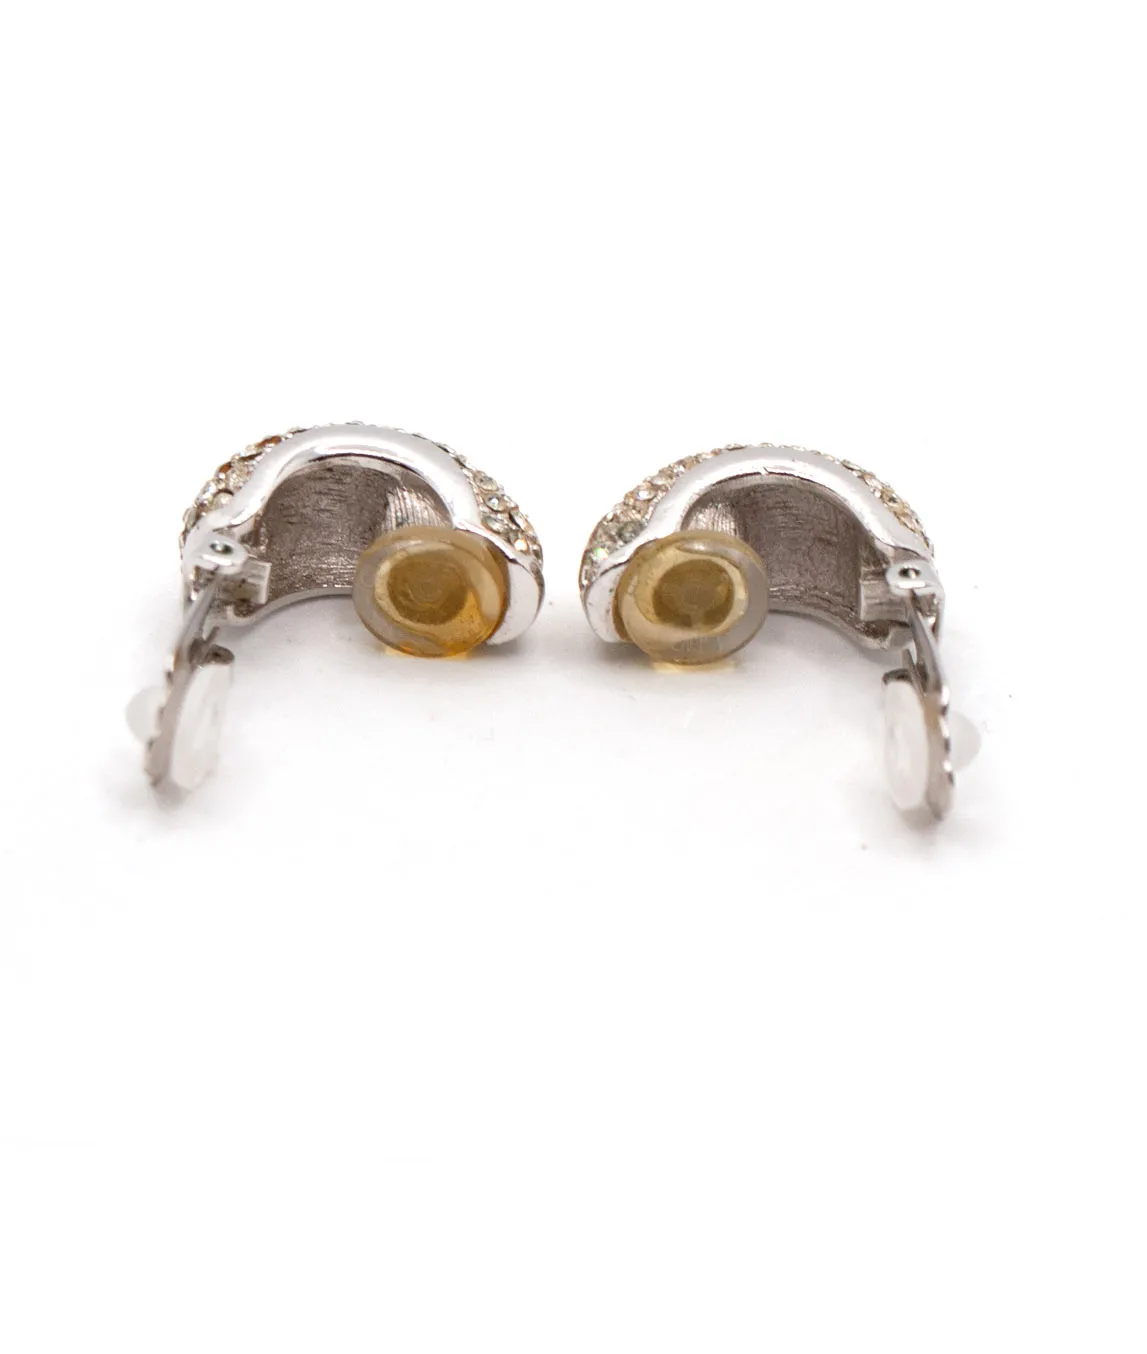 Interior of vintage Christian Dior demi-hoop earrings